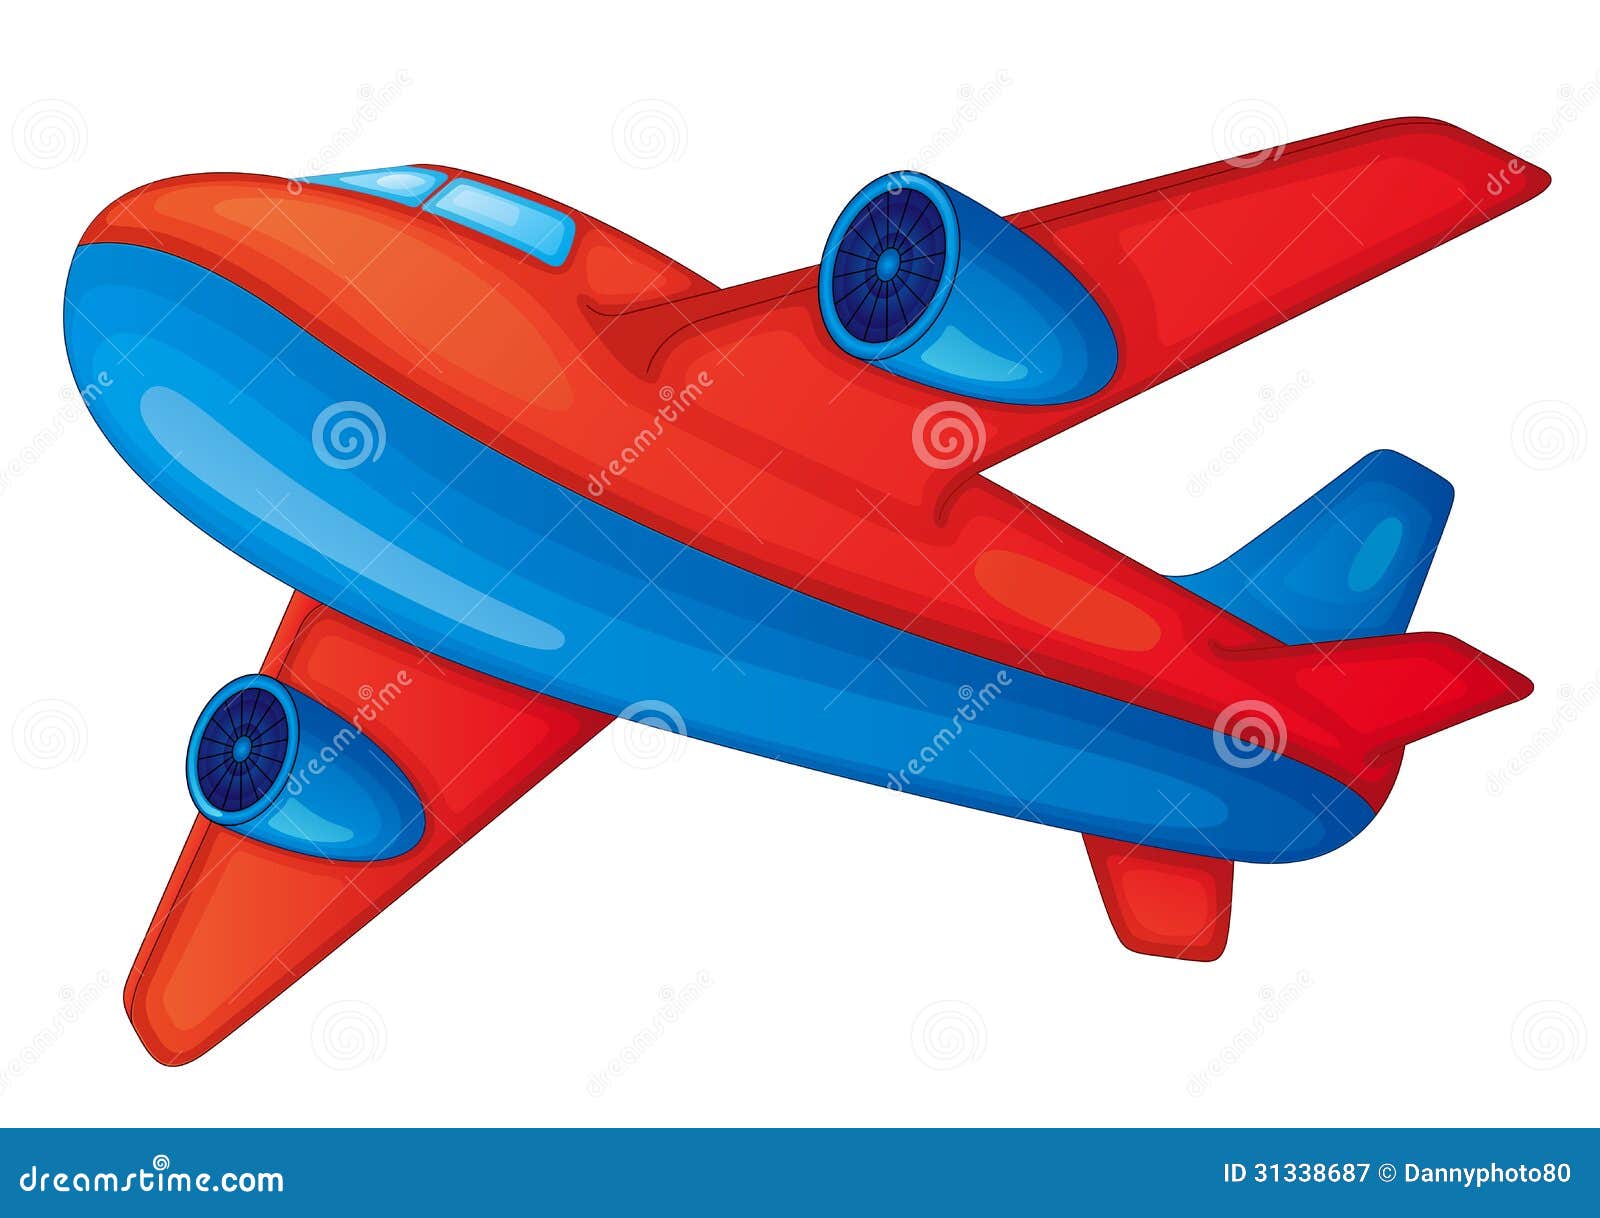 Самолетик. Воздушный транспорт в детском саду. Самолет карточка для детей. Транспорт для малышей самолётик. Воздушные самолеты для детей.